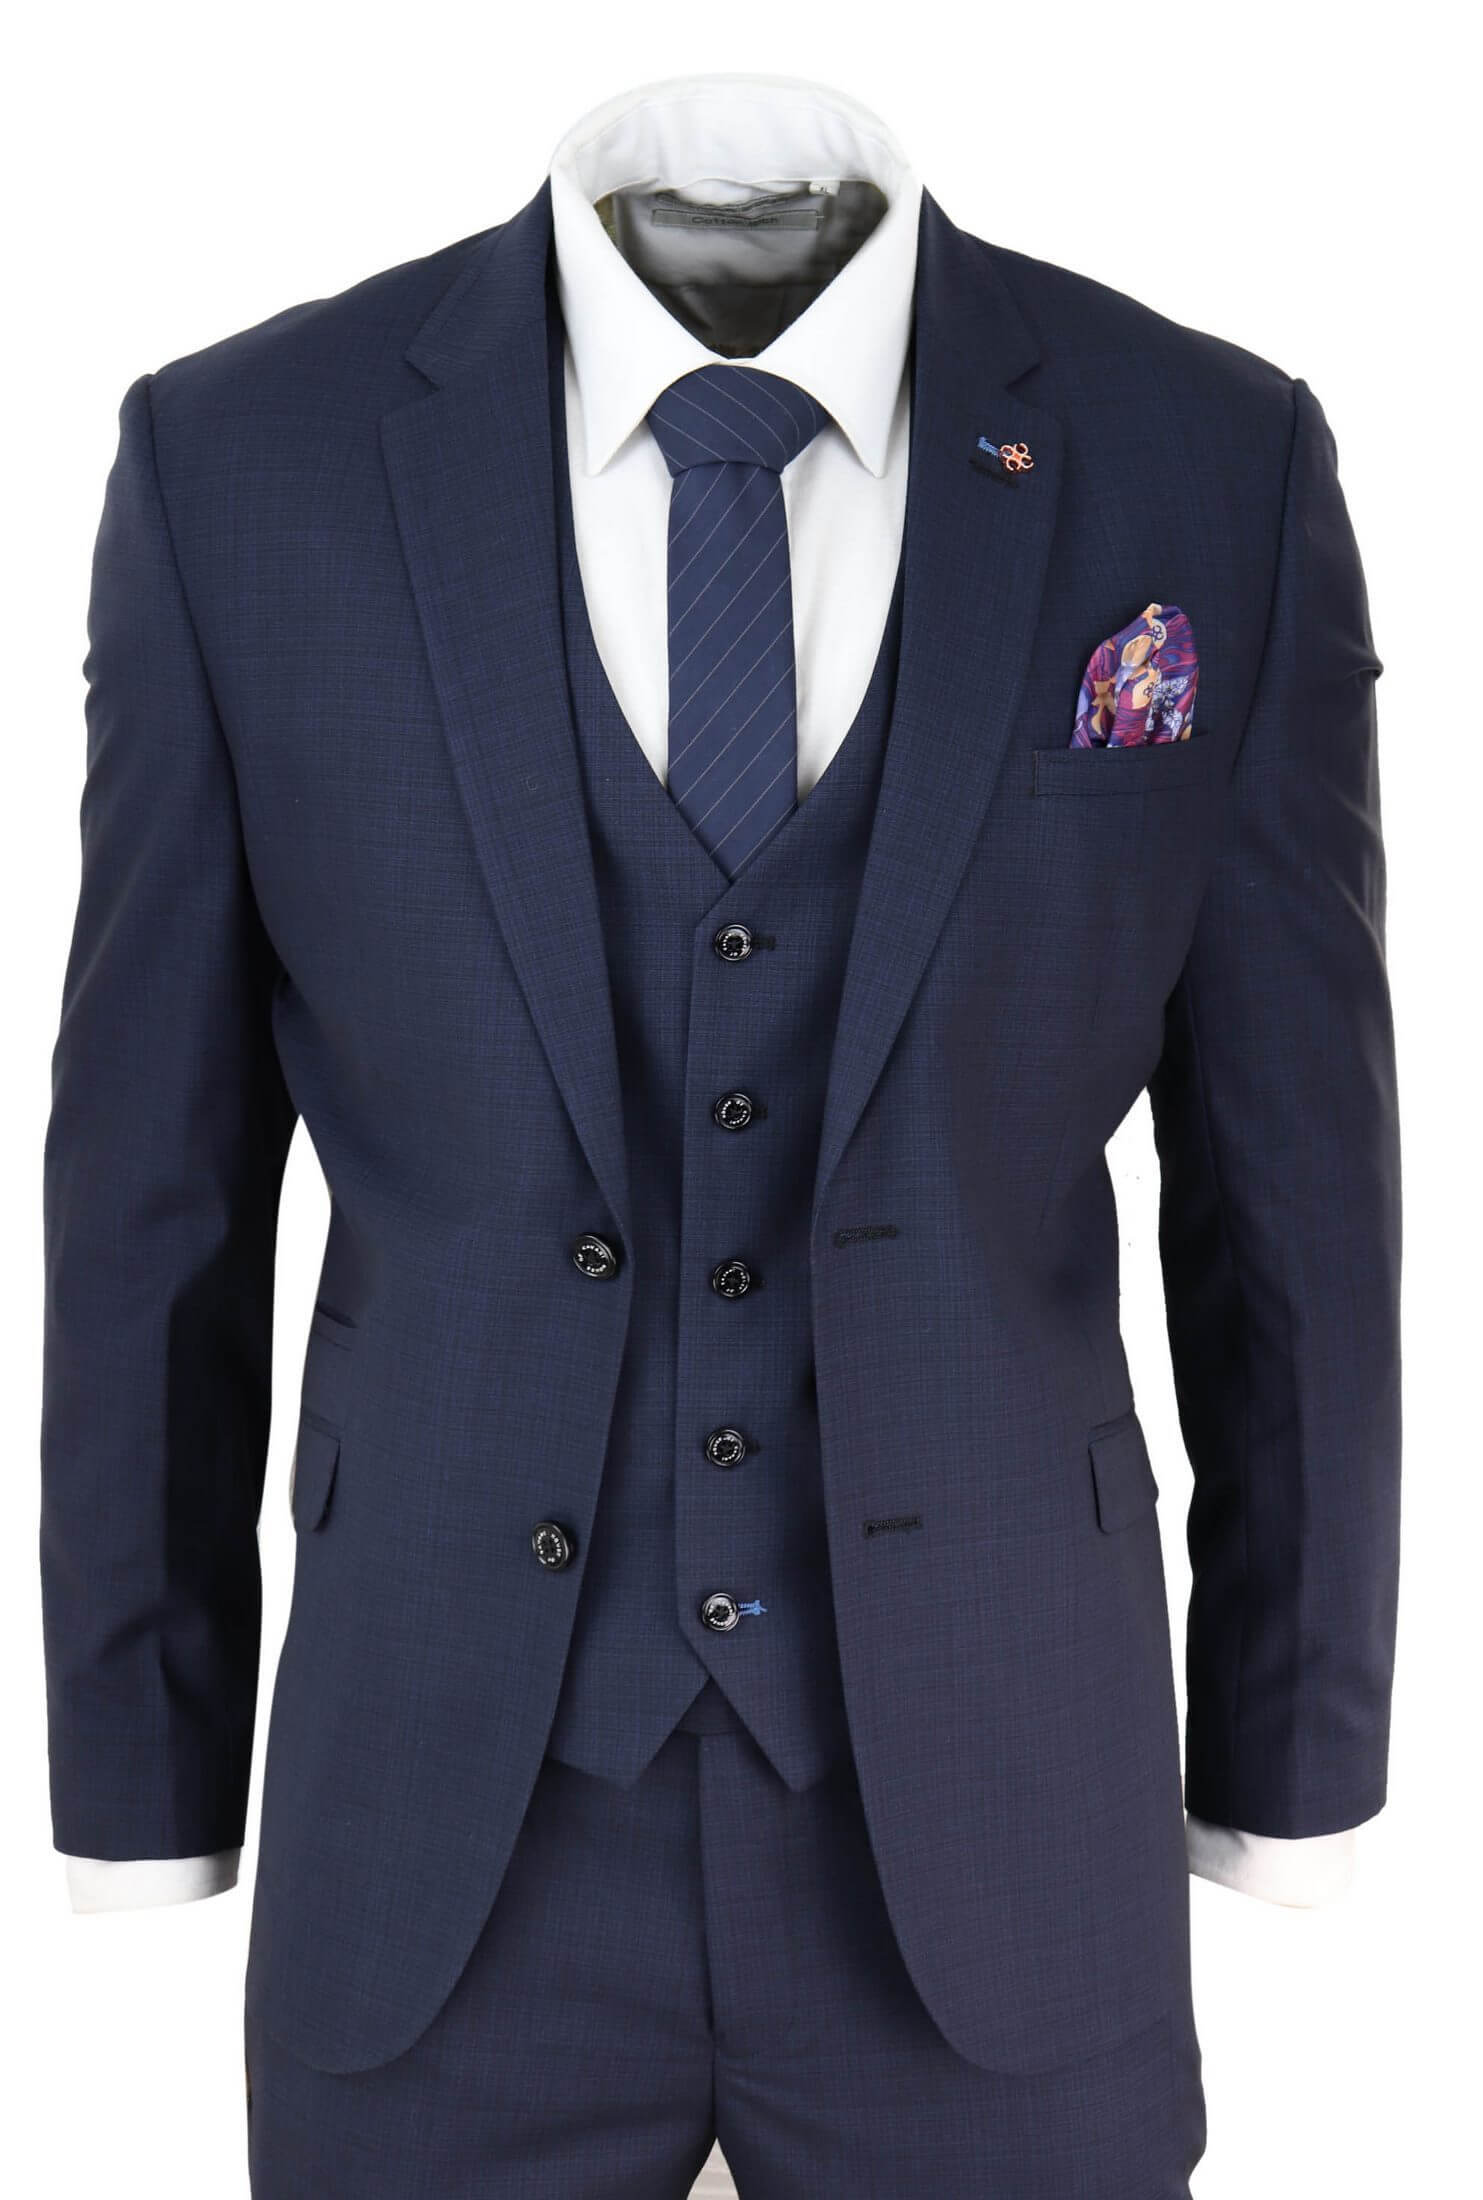 Mens Navy Blue Tailored Fit Suit: Buy Online - Happy Gentleman